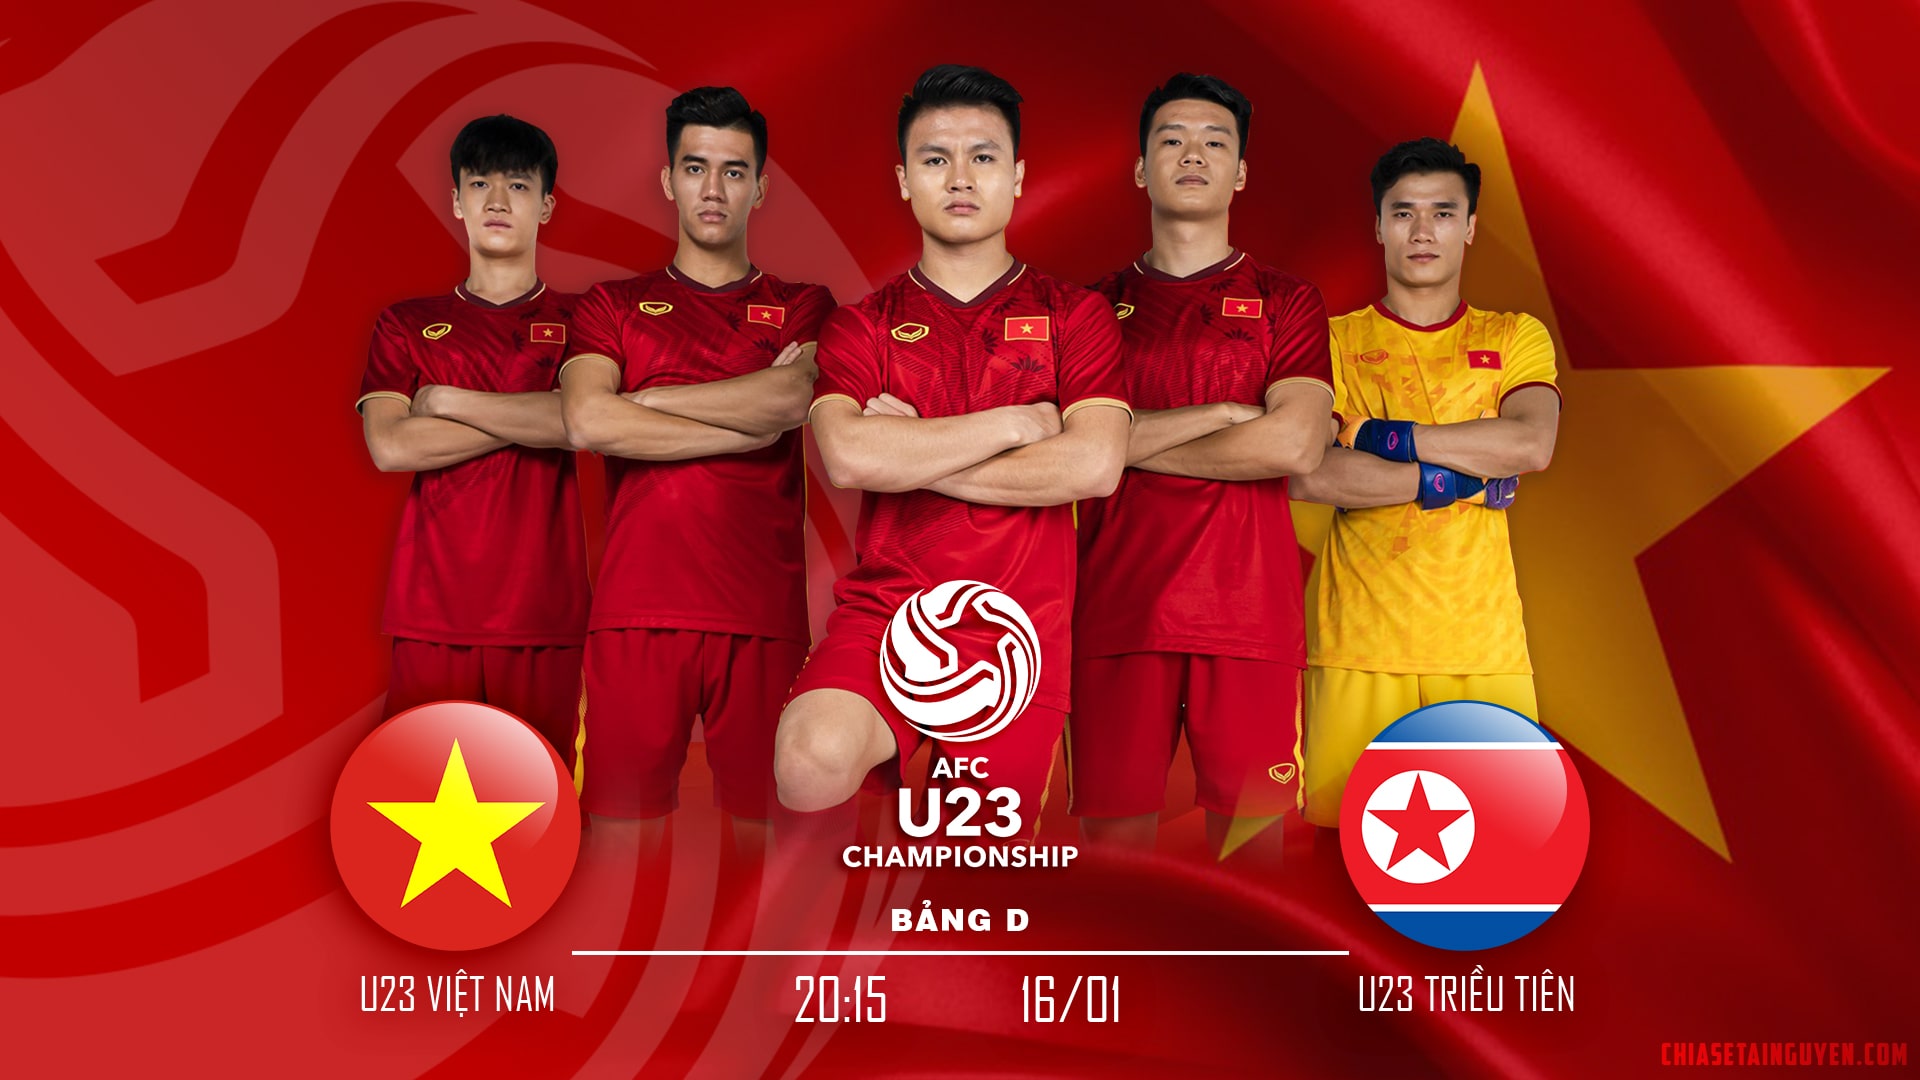 Mới nhất bộ banner cổ vũ U23 Việt Nam chinh phục AFC Cup 2020